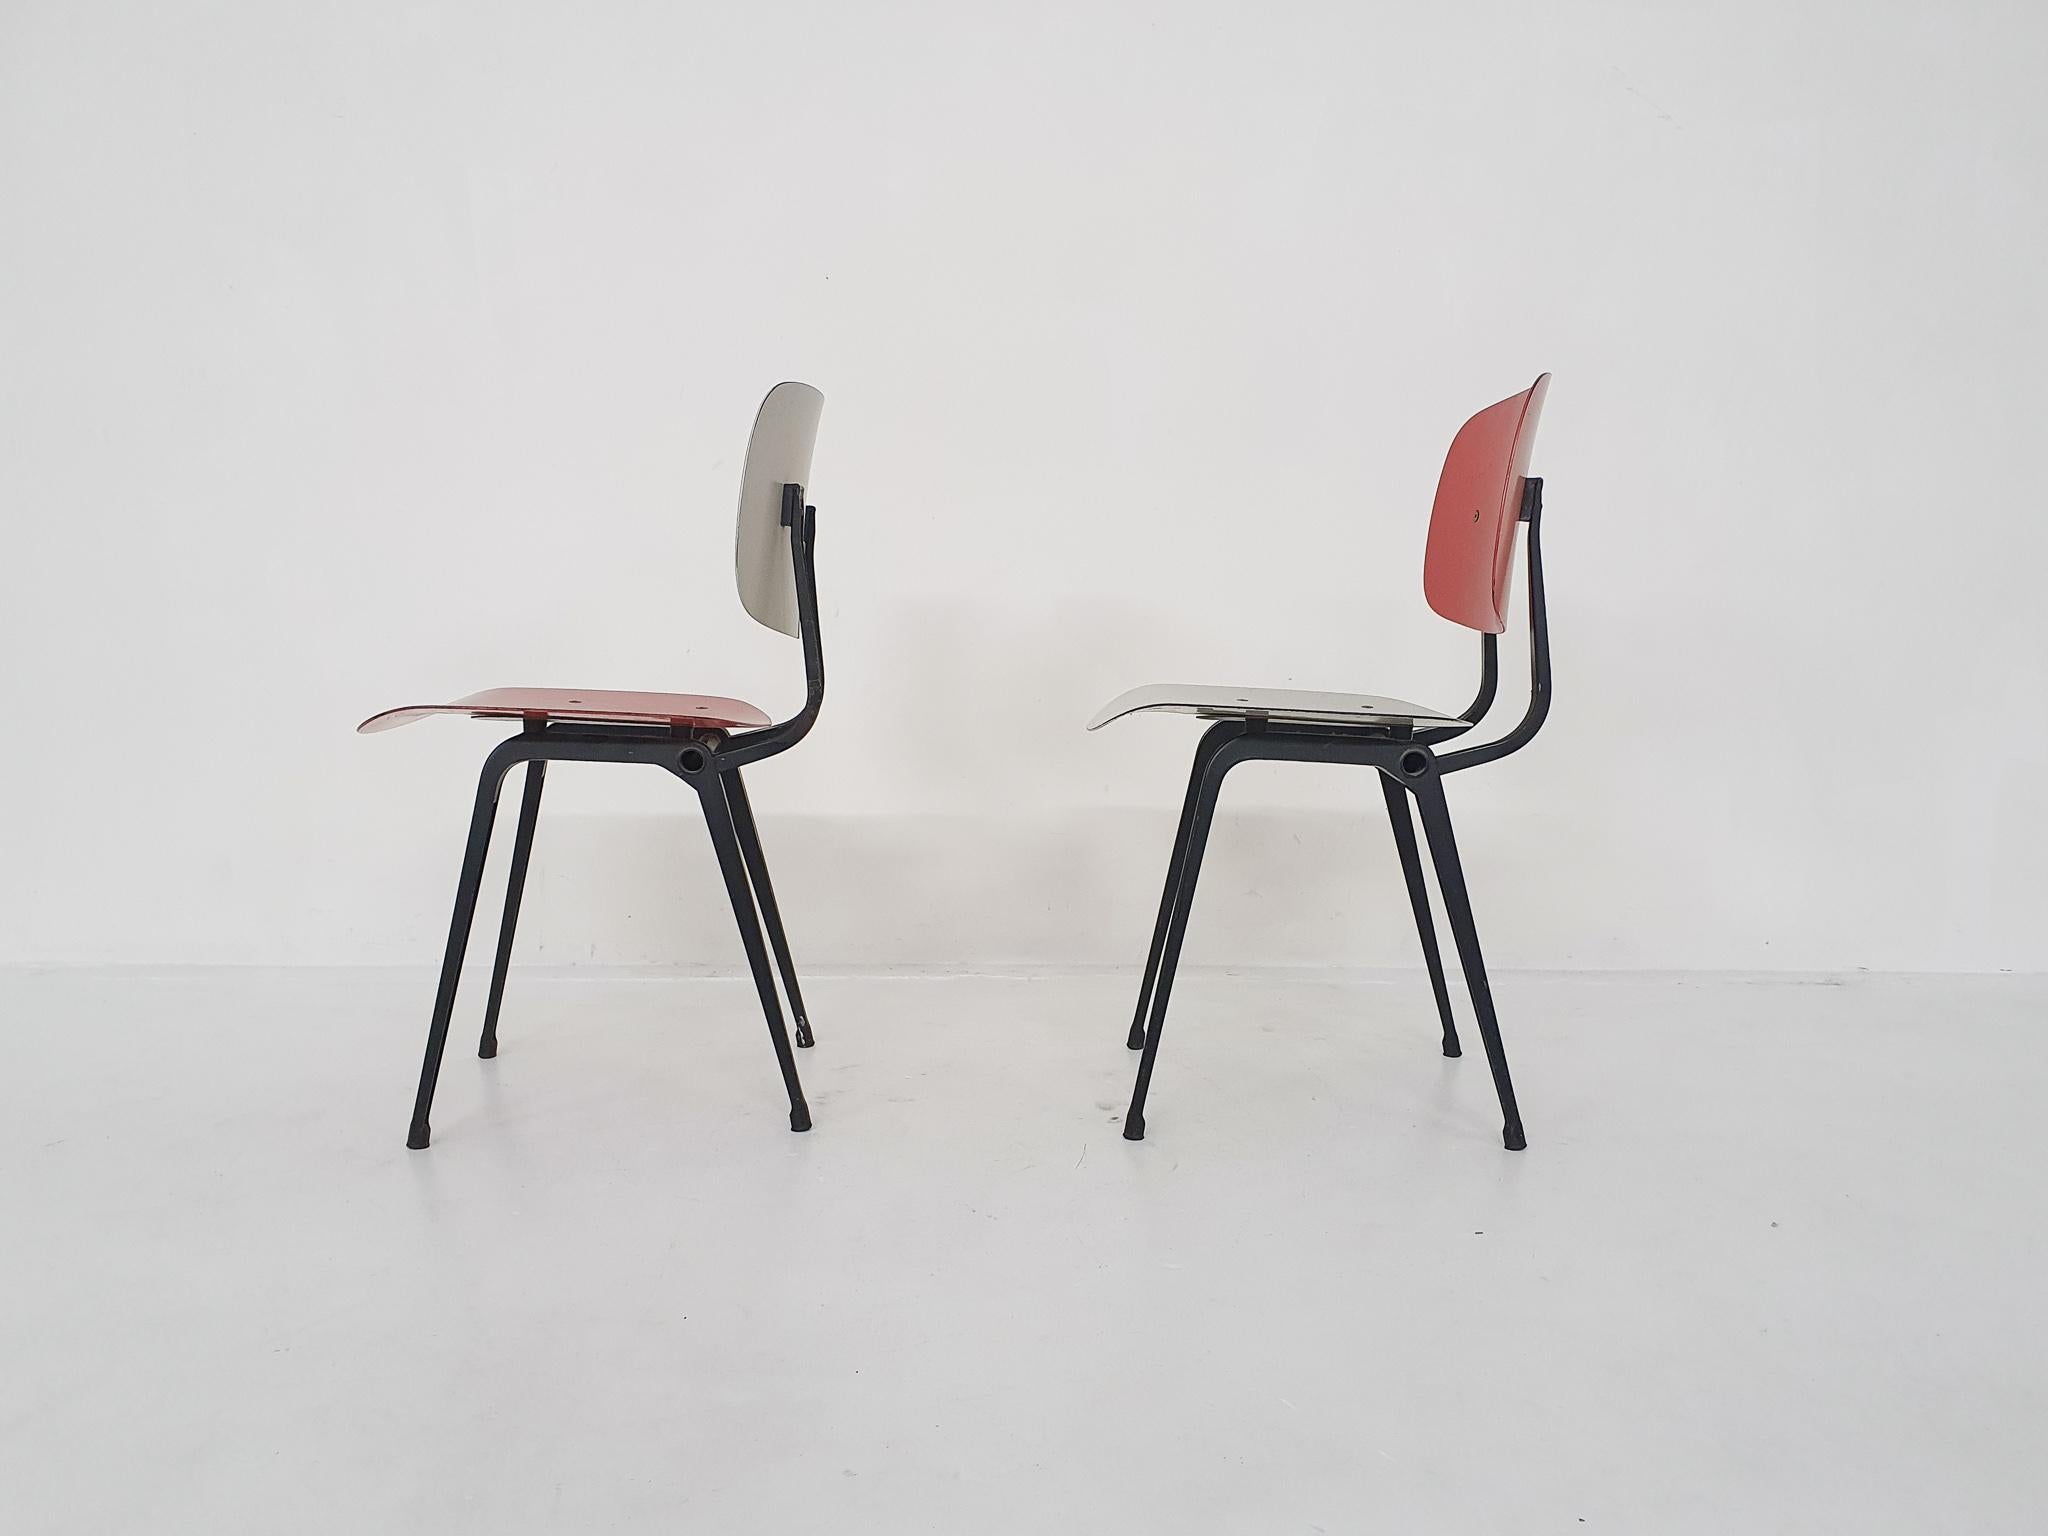 Schwarzer Metallrahmen, Sitzfläche und Rückenlehne aus rotem und weißem Polyester.
In gebrauchtem, aber originalem Zustand.

 